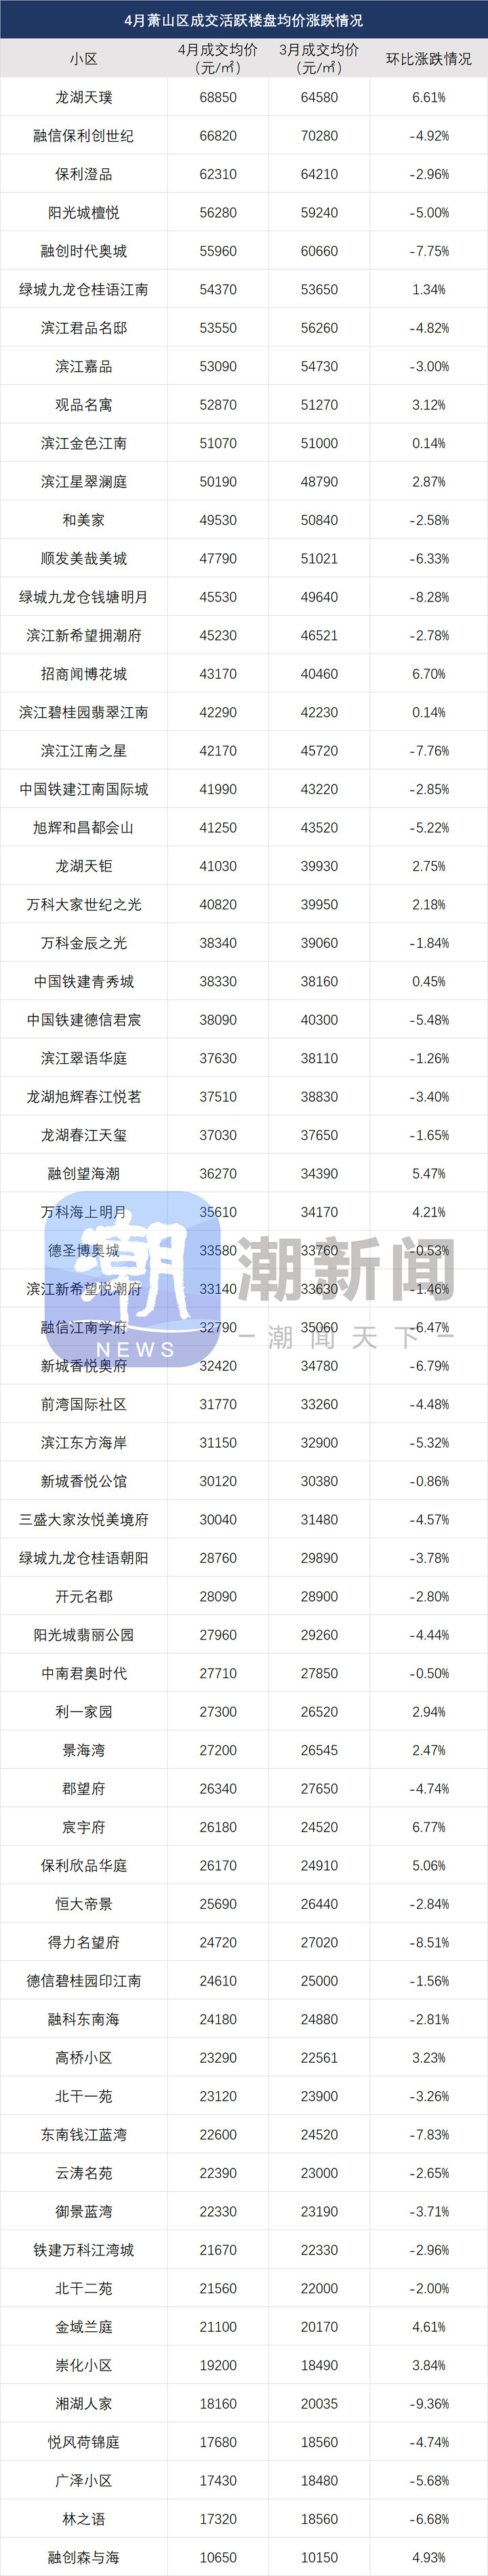 最新杭州二手房价涨跌榜出炉,千万豪宅成交123套,却难逃降价命运